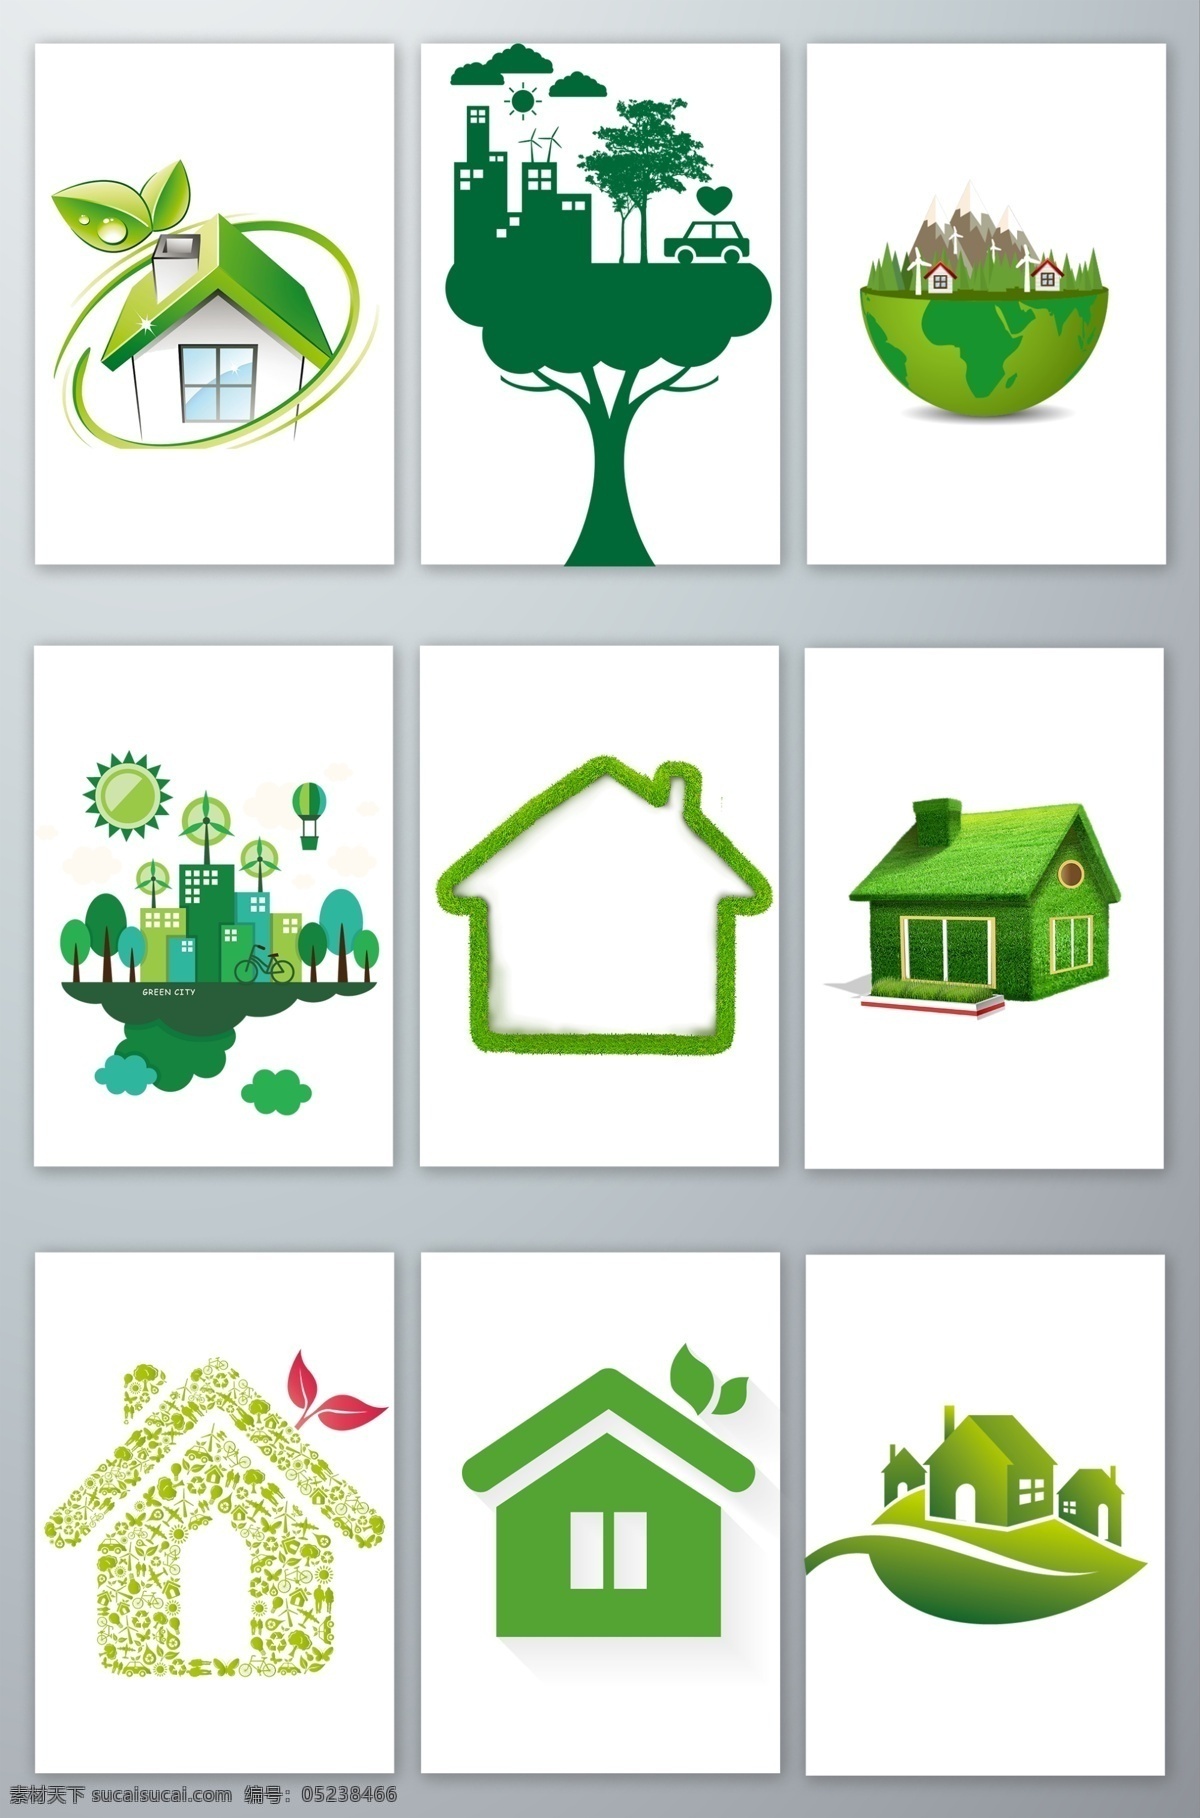 绿色 房子 环保 创意 绿色房子环保 房子创意素材 节能环保 环保素材 低碳环保 环保图片 环保海报 自然 公益 保护家园 保护地球 健康环保 小草 叶子 树 绿叶 城市建筑 家 地球 动漫动画 动漫人物